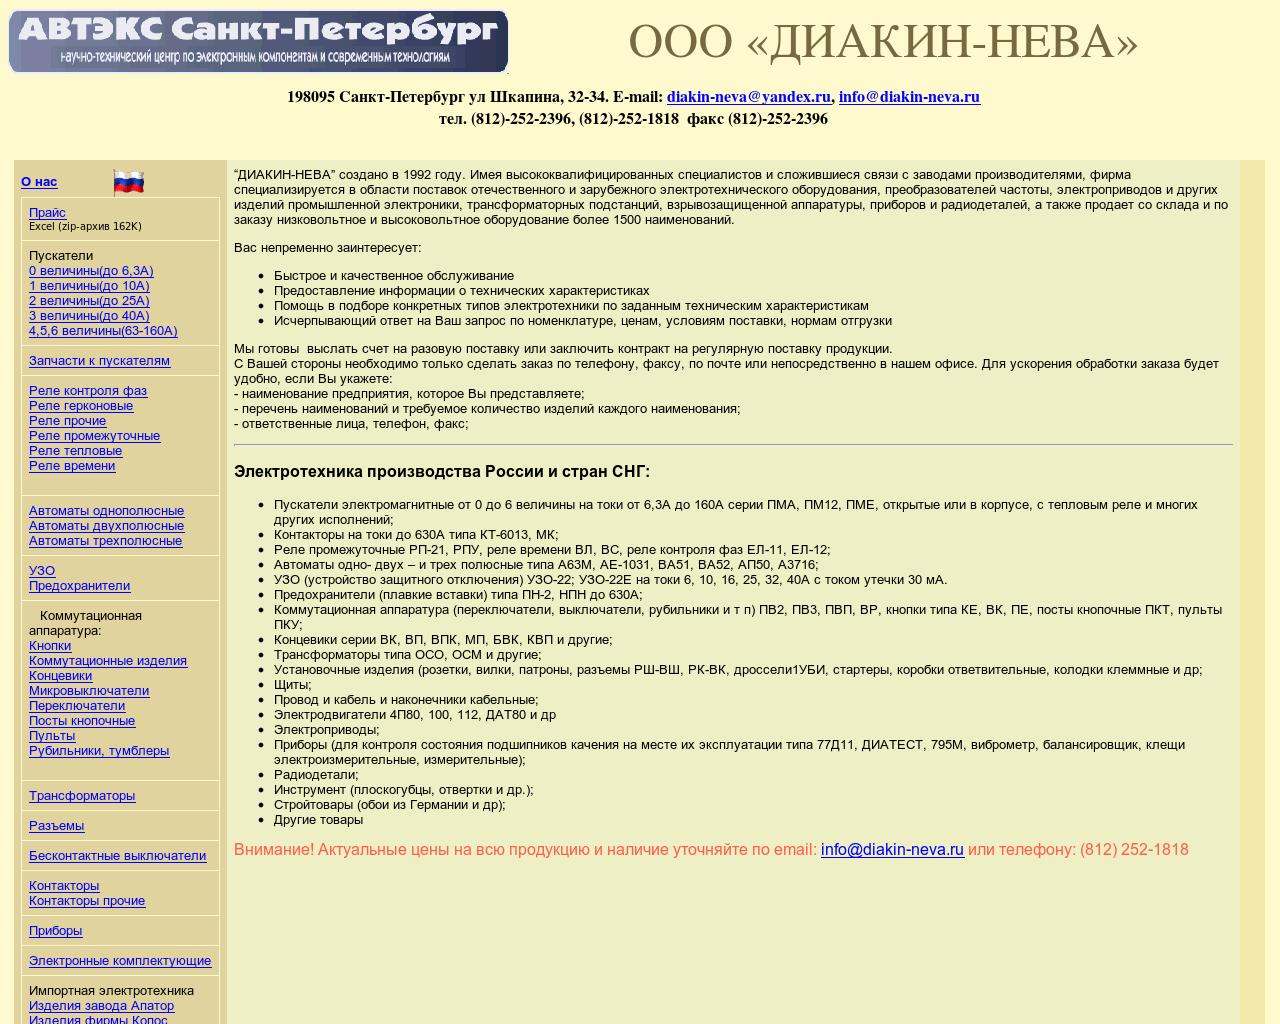 Изображение сайта diakin-neva.ru в разрешении 1280x1024